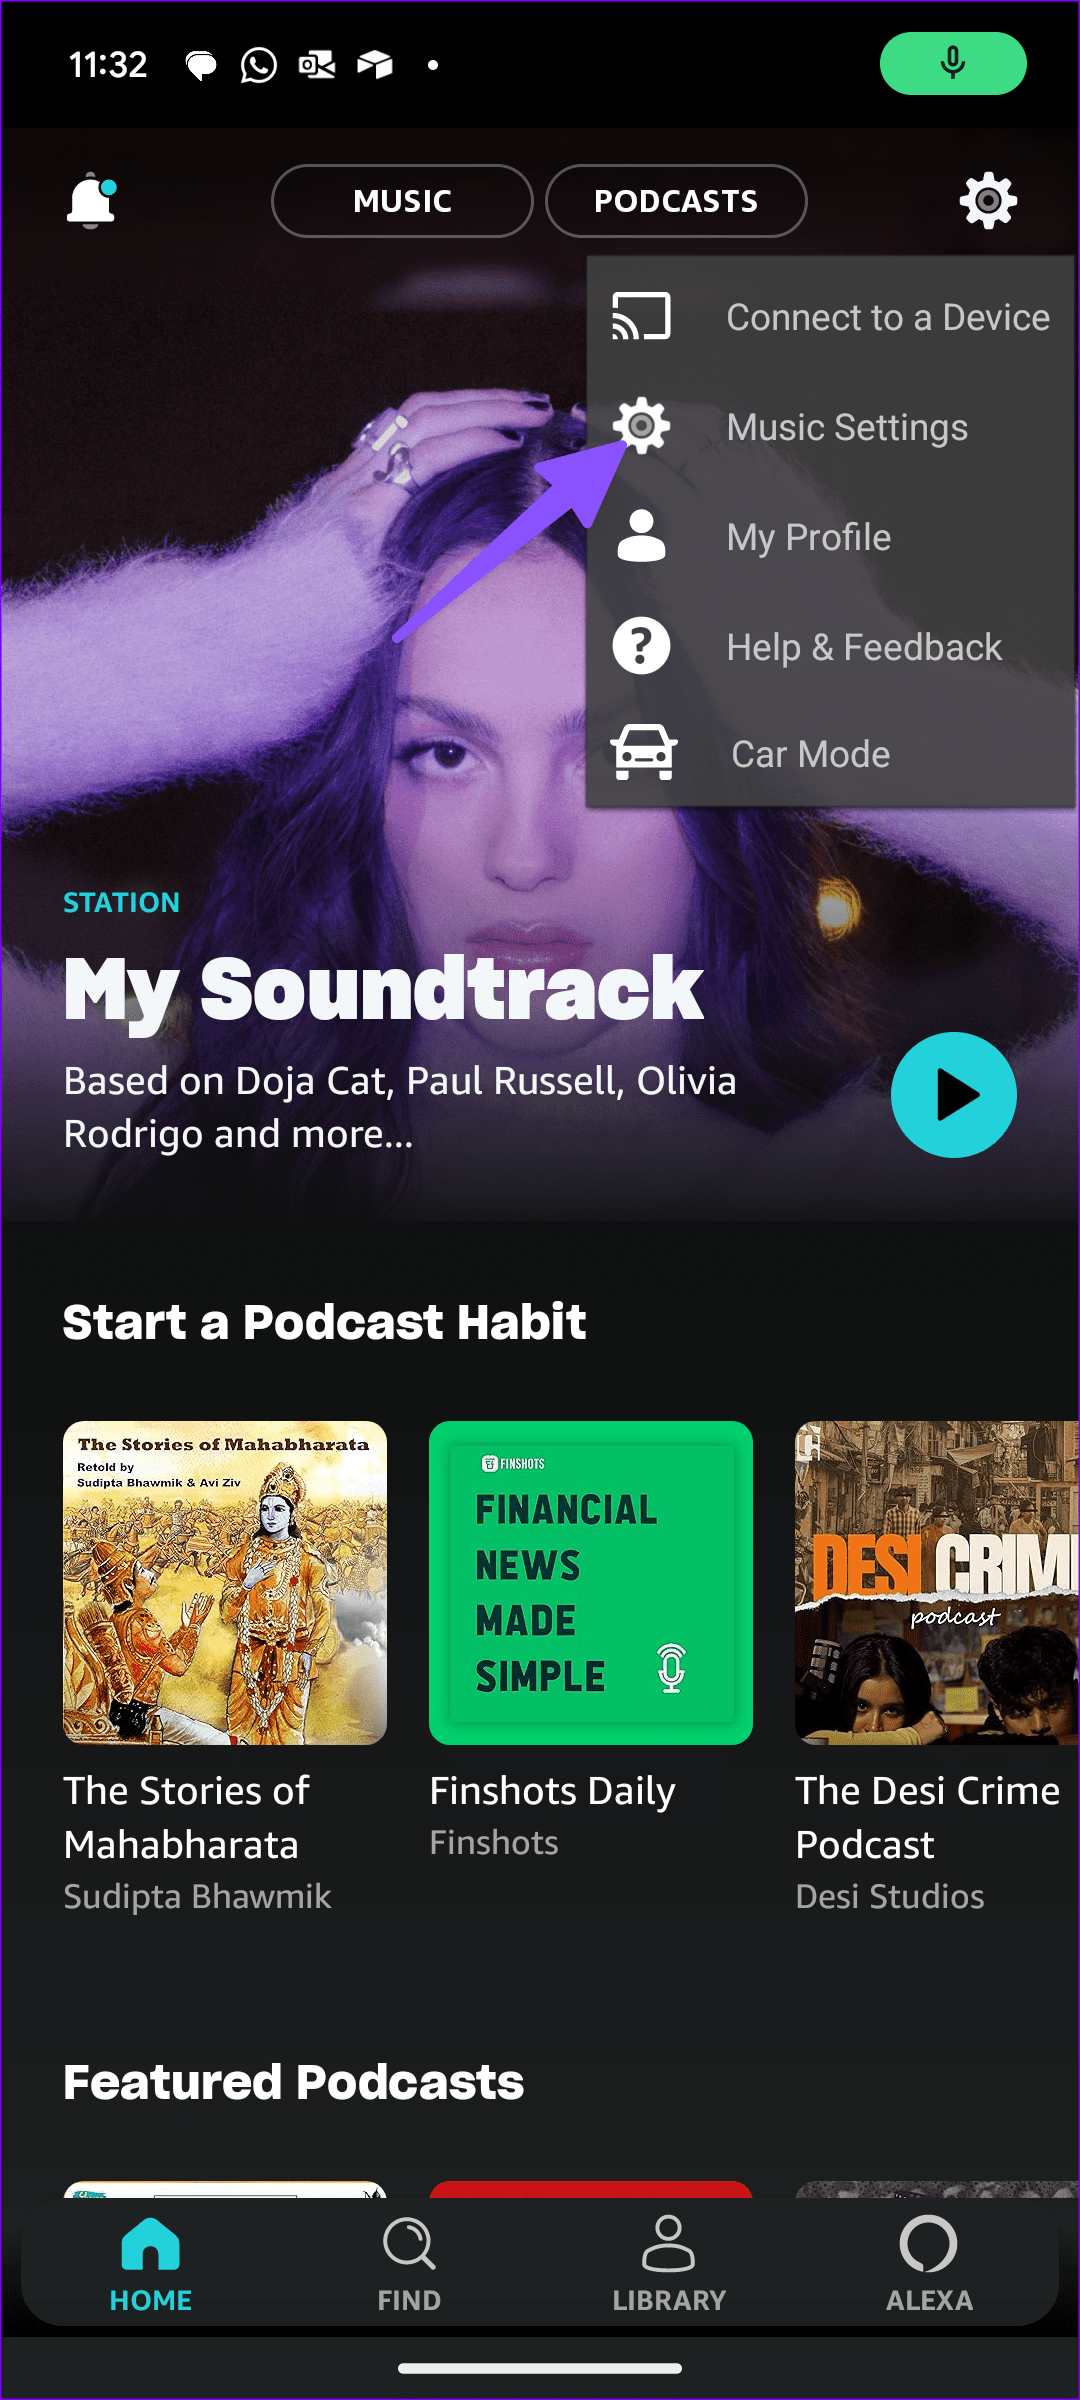 Las 14 mejores formas de arreglar la aplicación Amazon Music que no funciona en iPhone y Android